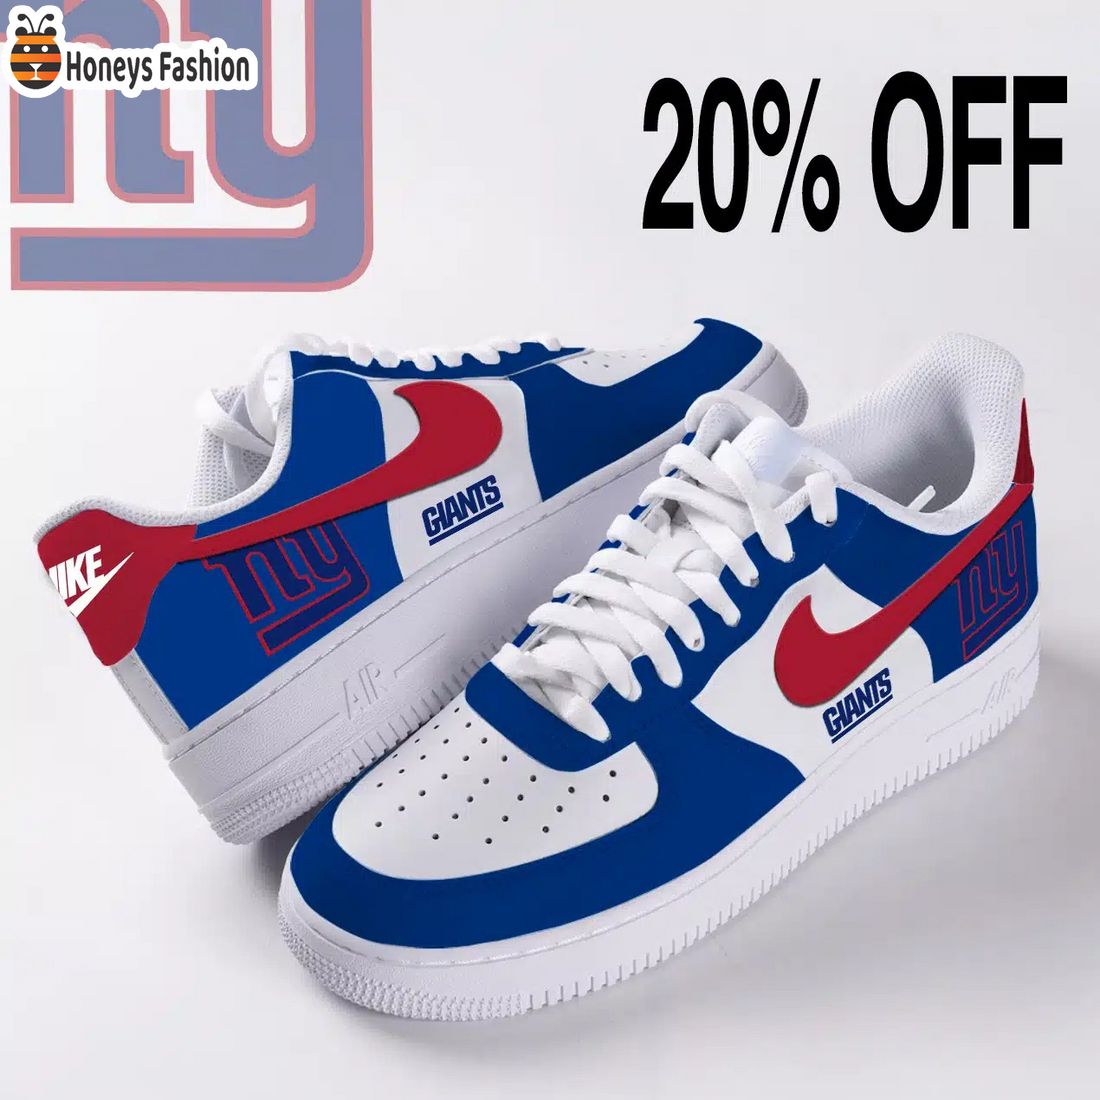 New York Giants NFL Nike Custom Air Force Shoes